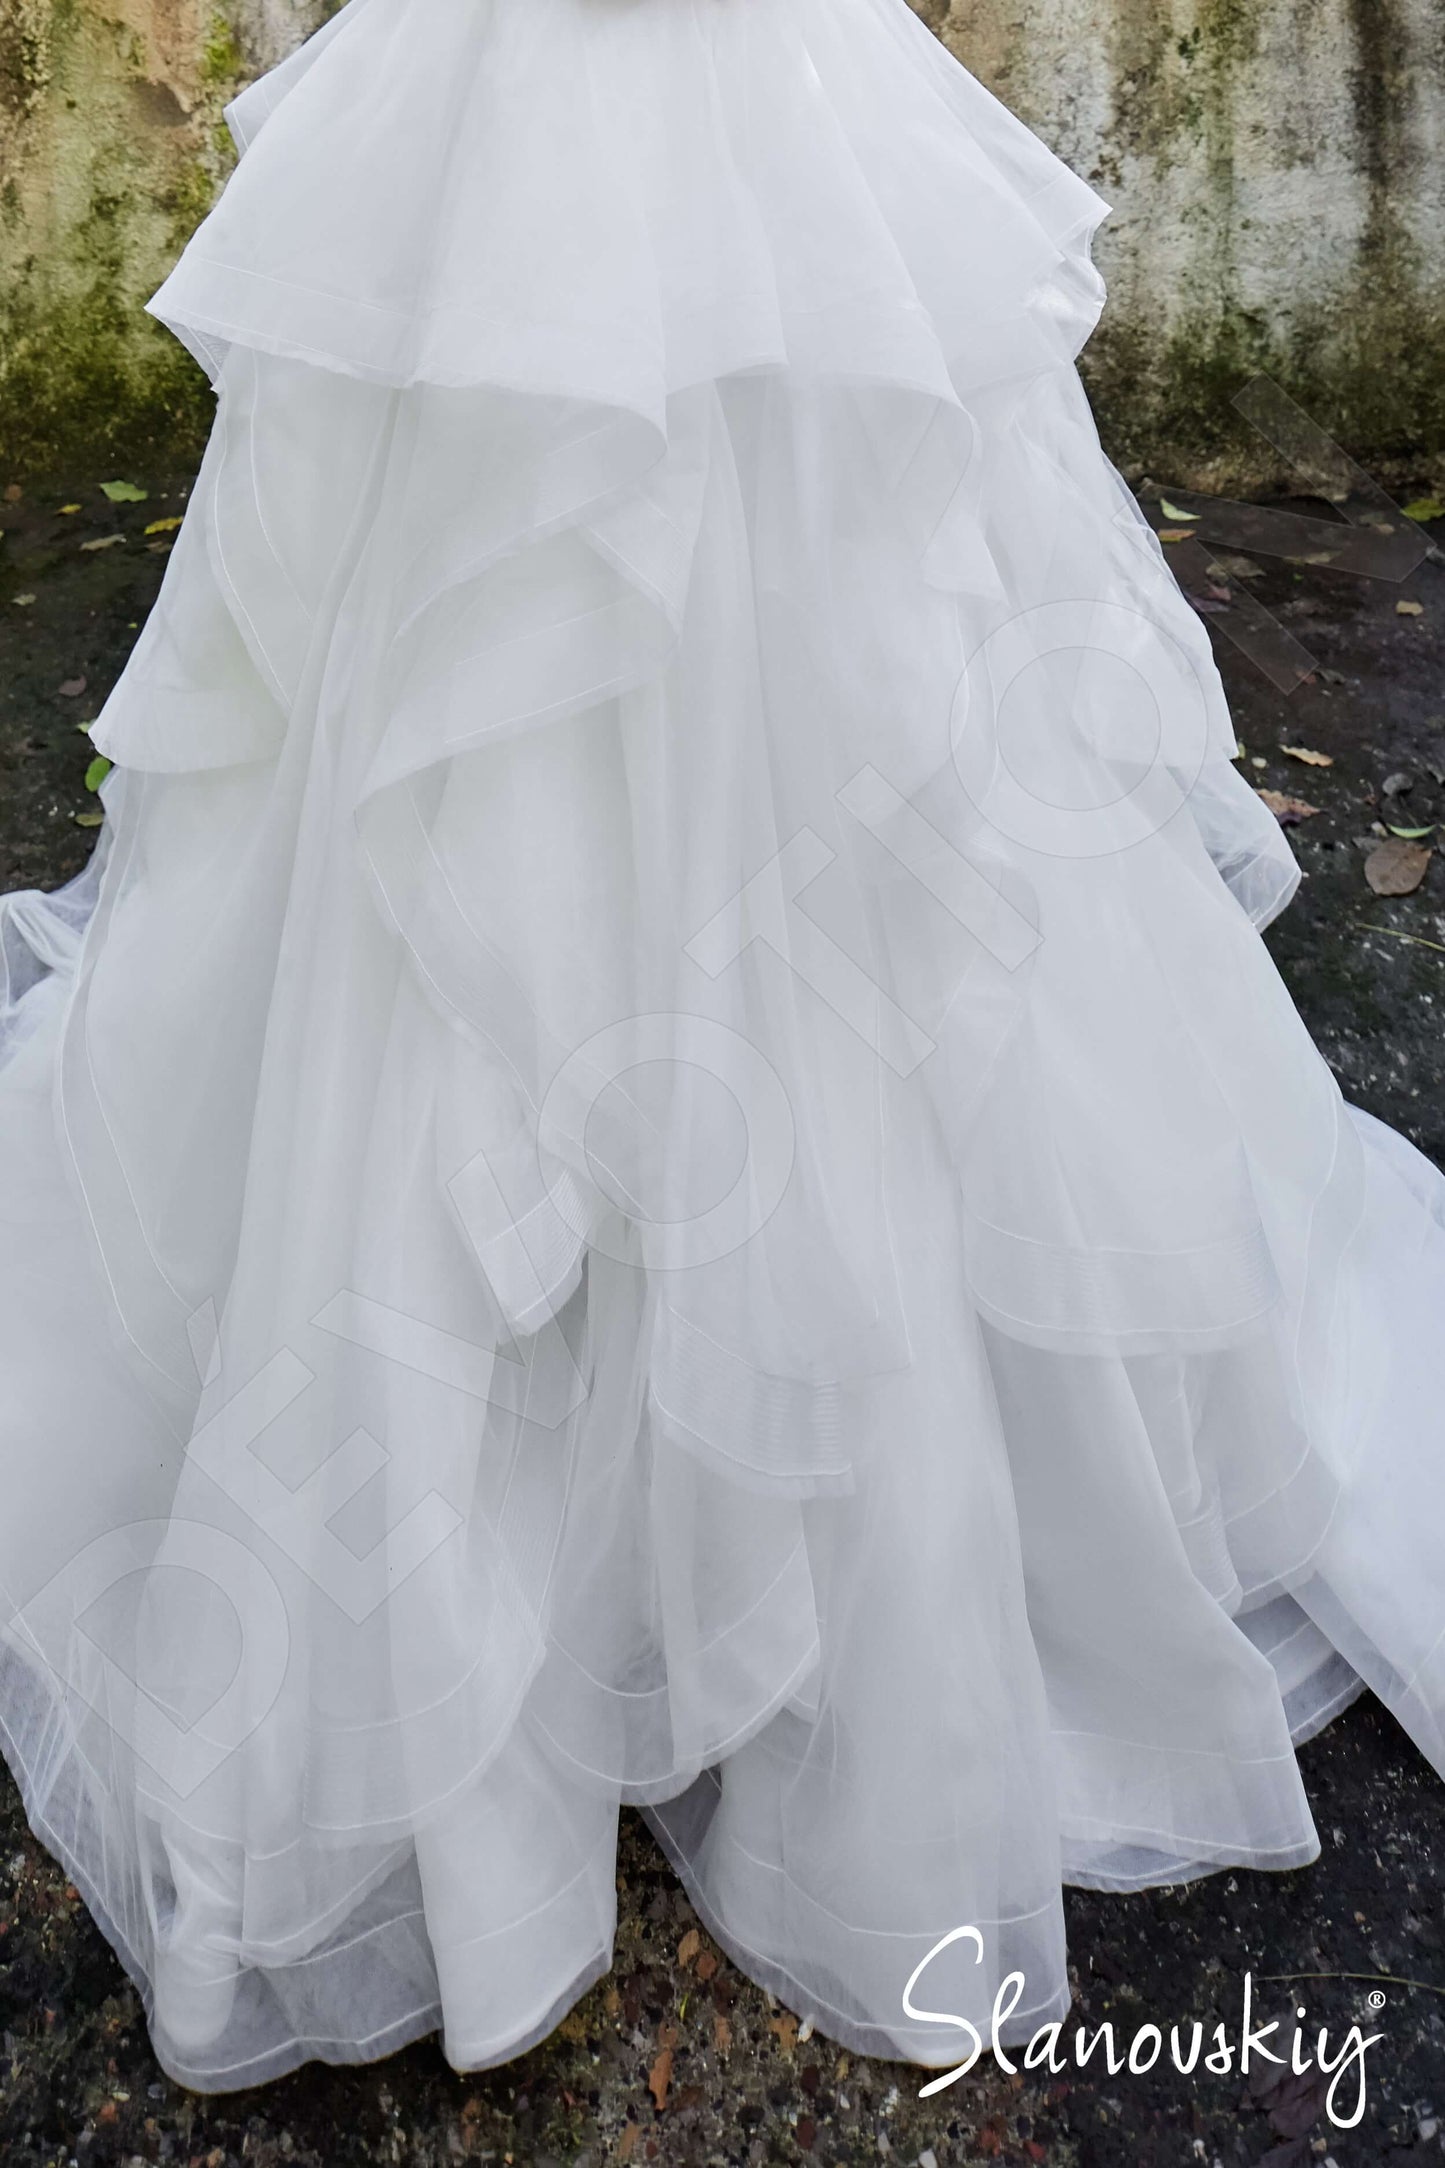 Asta Open back Princess/Ball Gown Sleeveless Wedding Dress 2